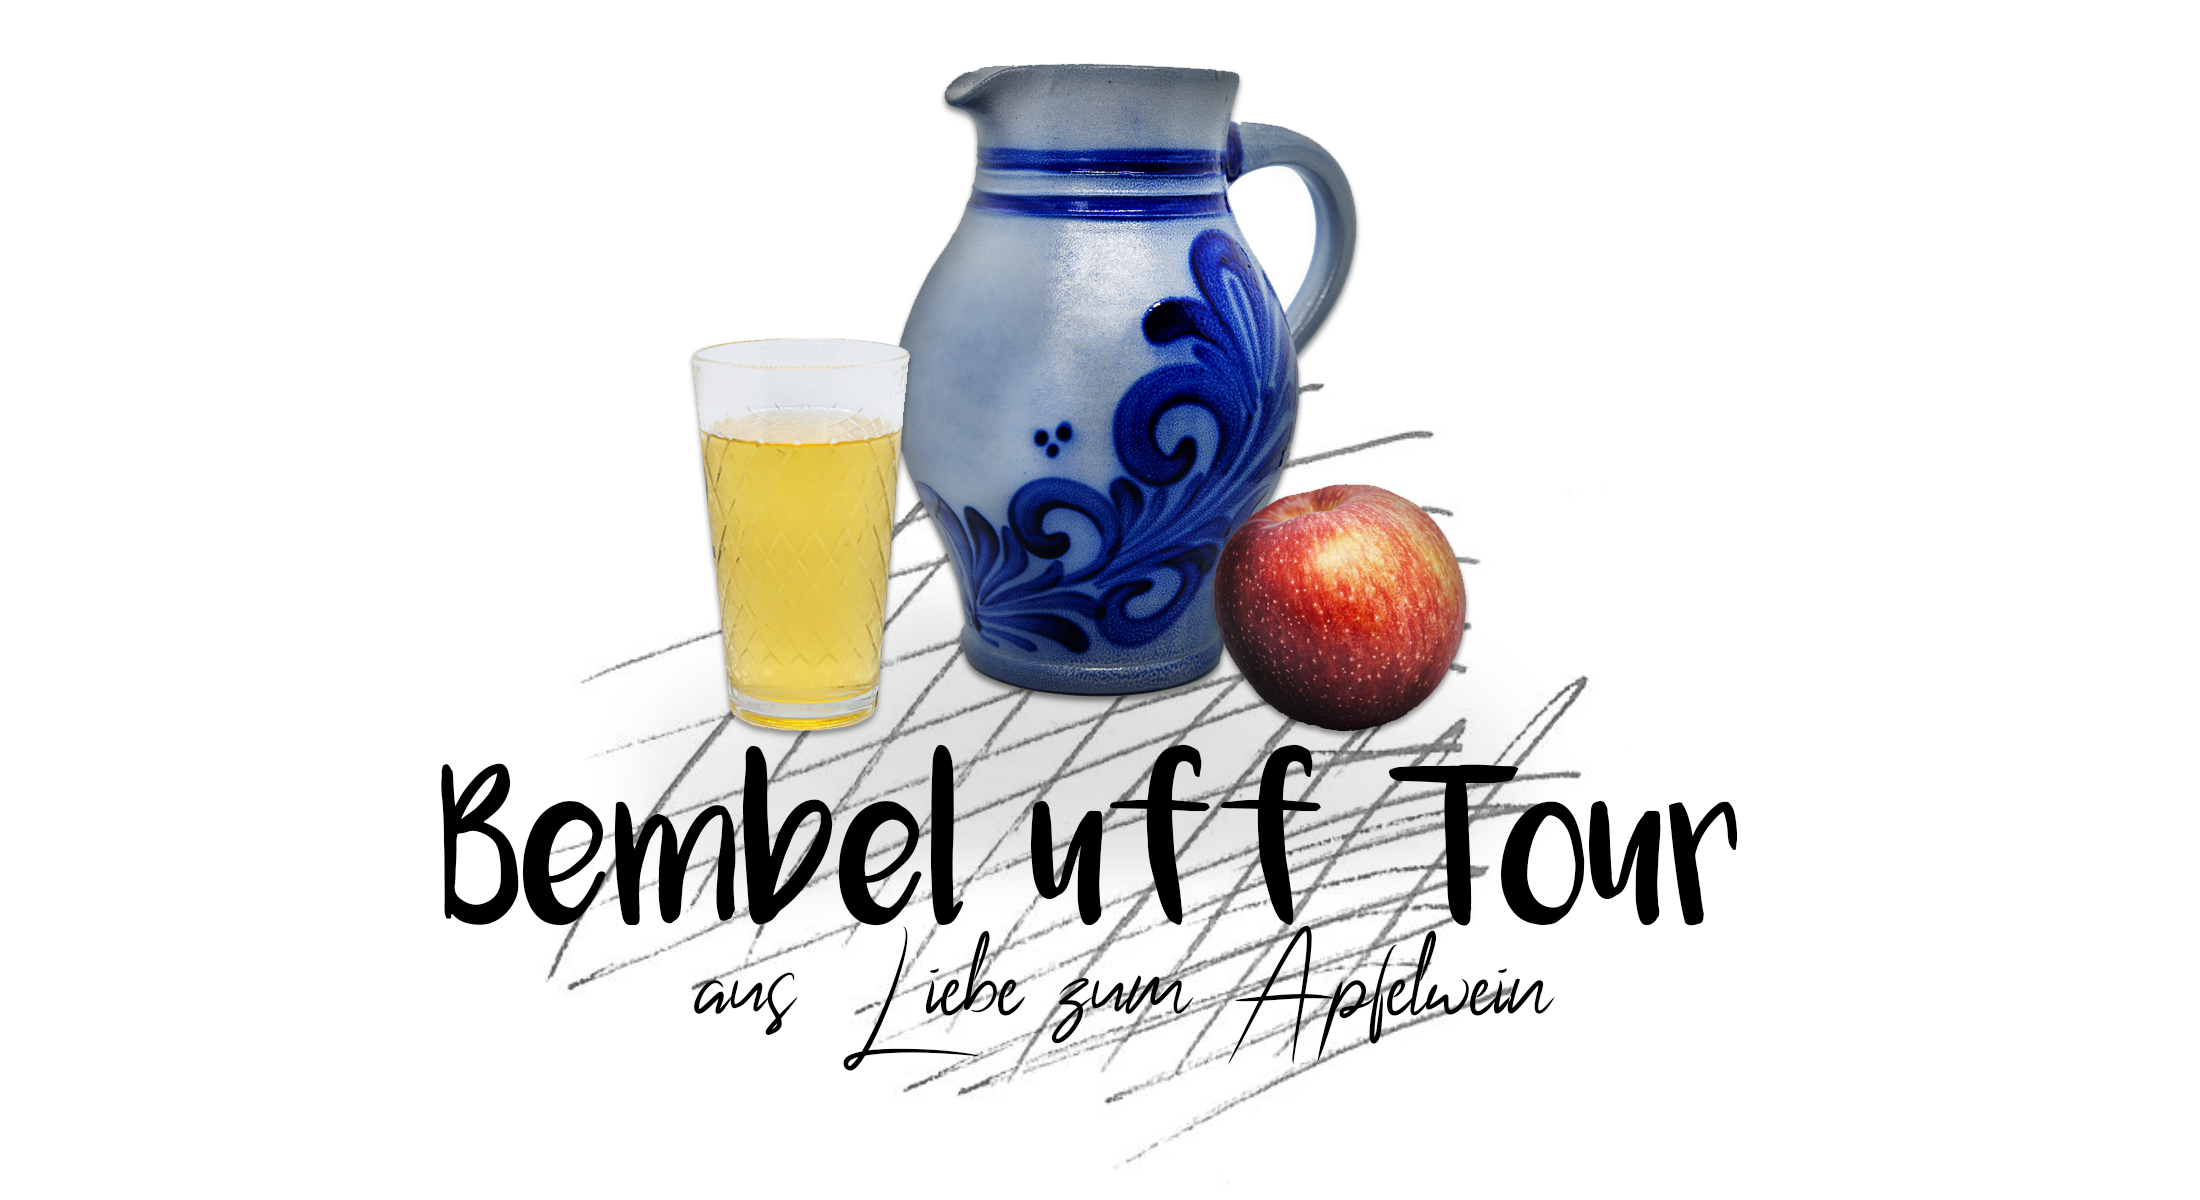 Gewinnspiel von 'Bembel uff Tour'